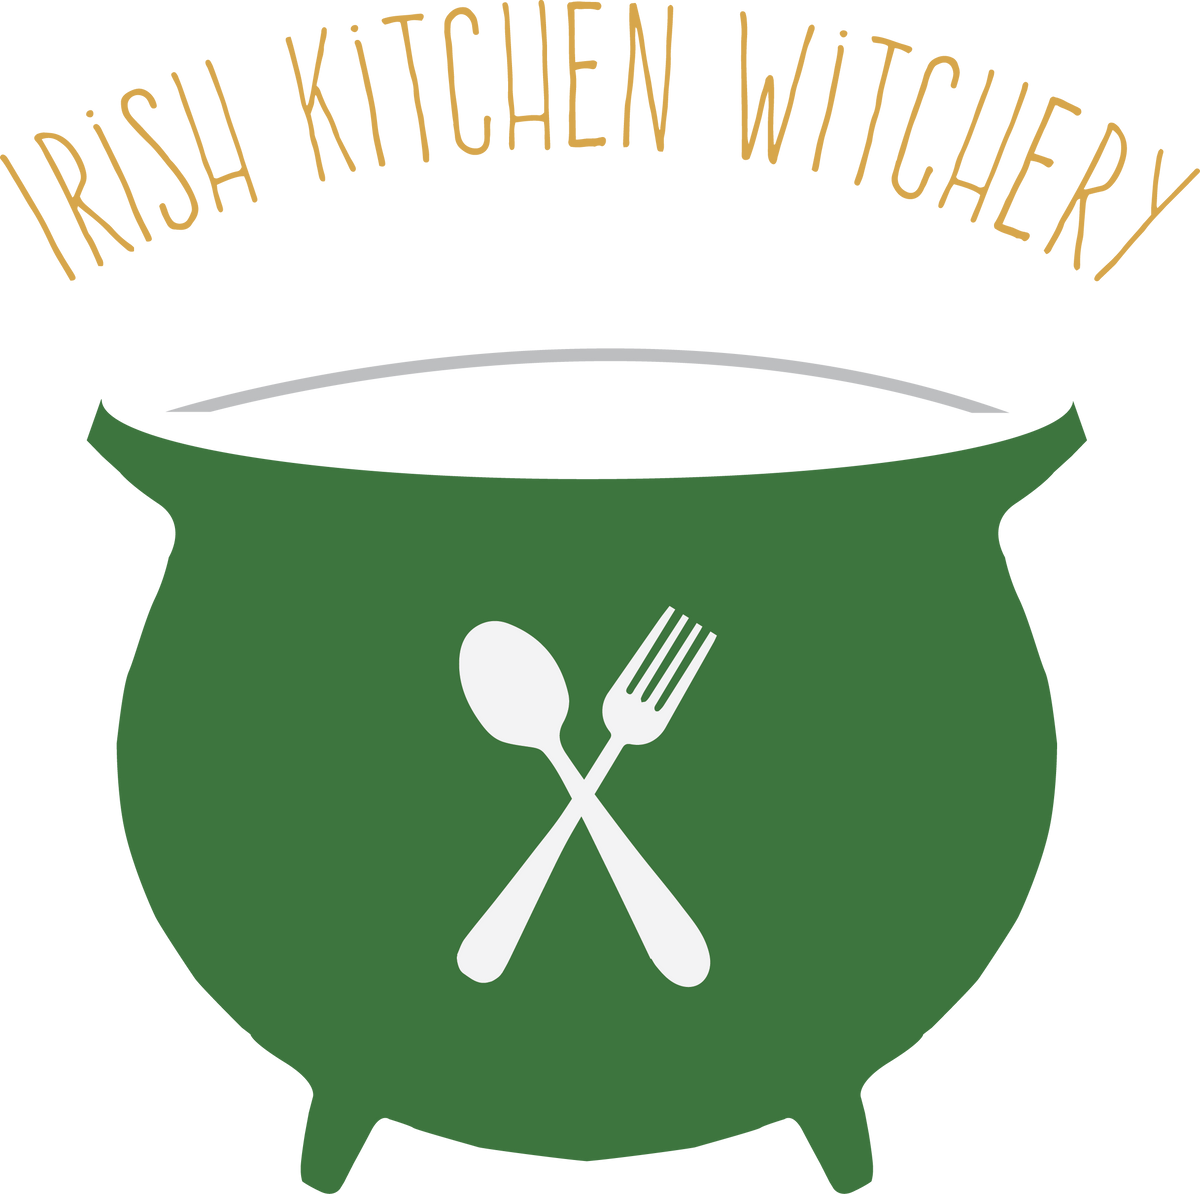 Irish Kitchen Witchery